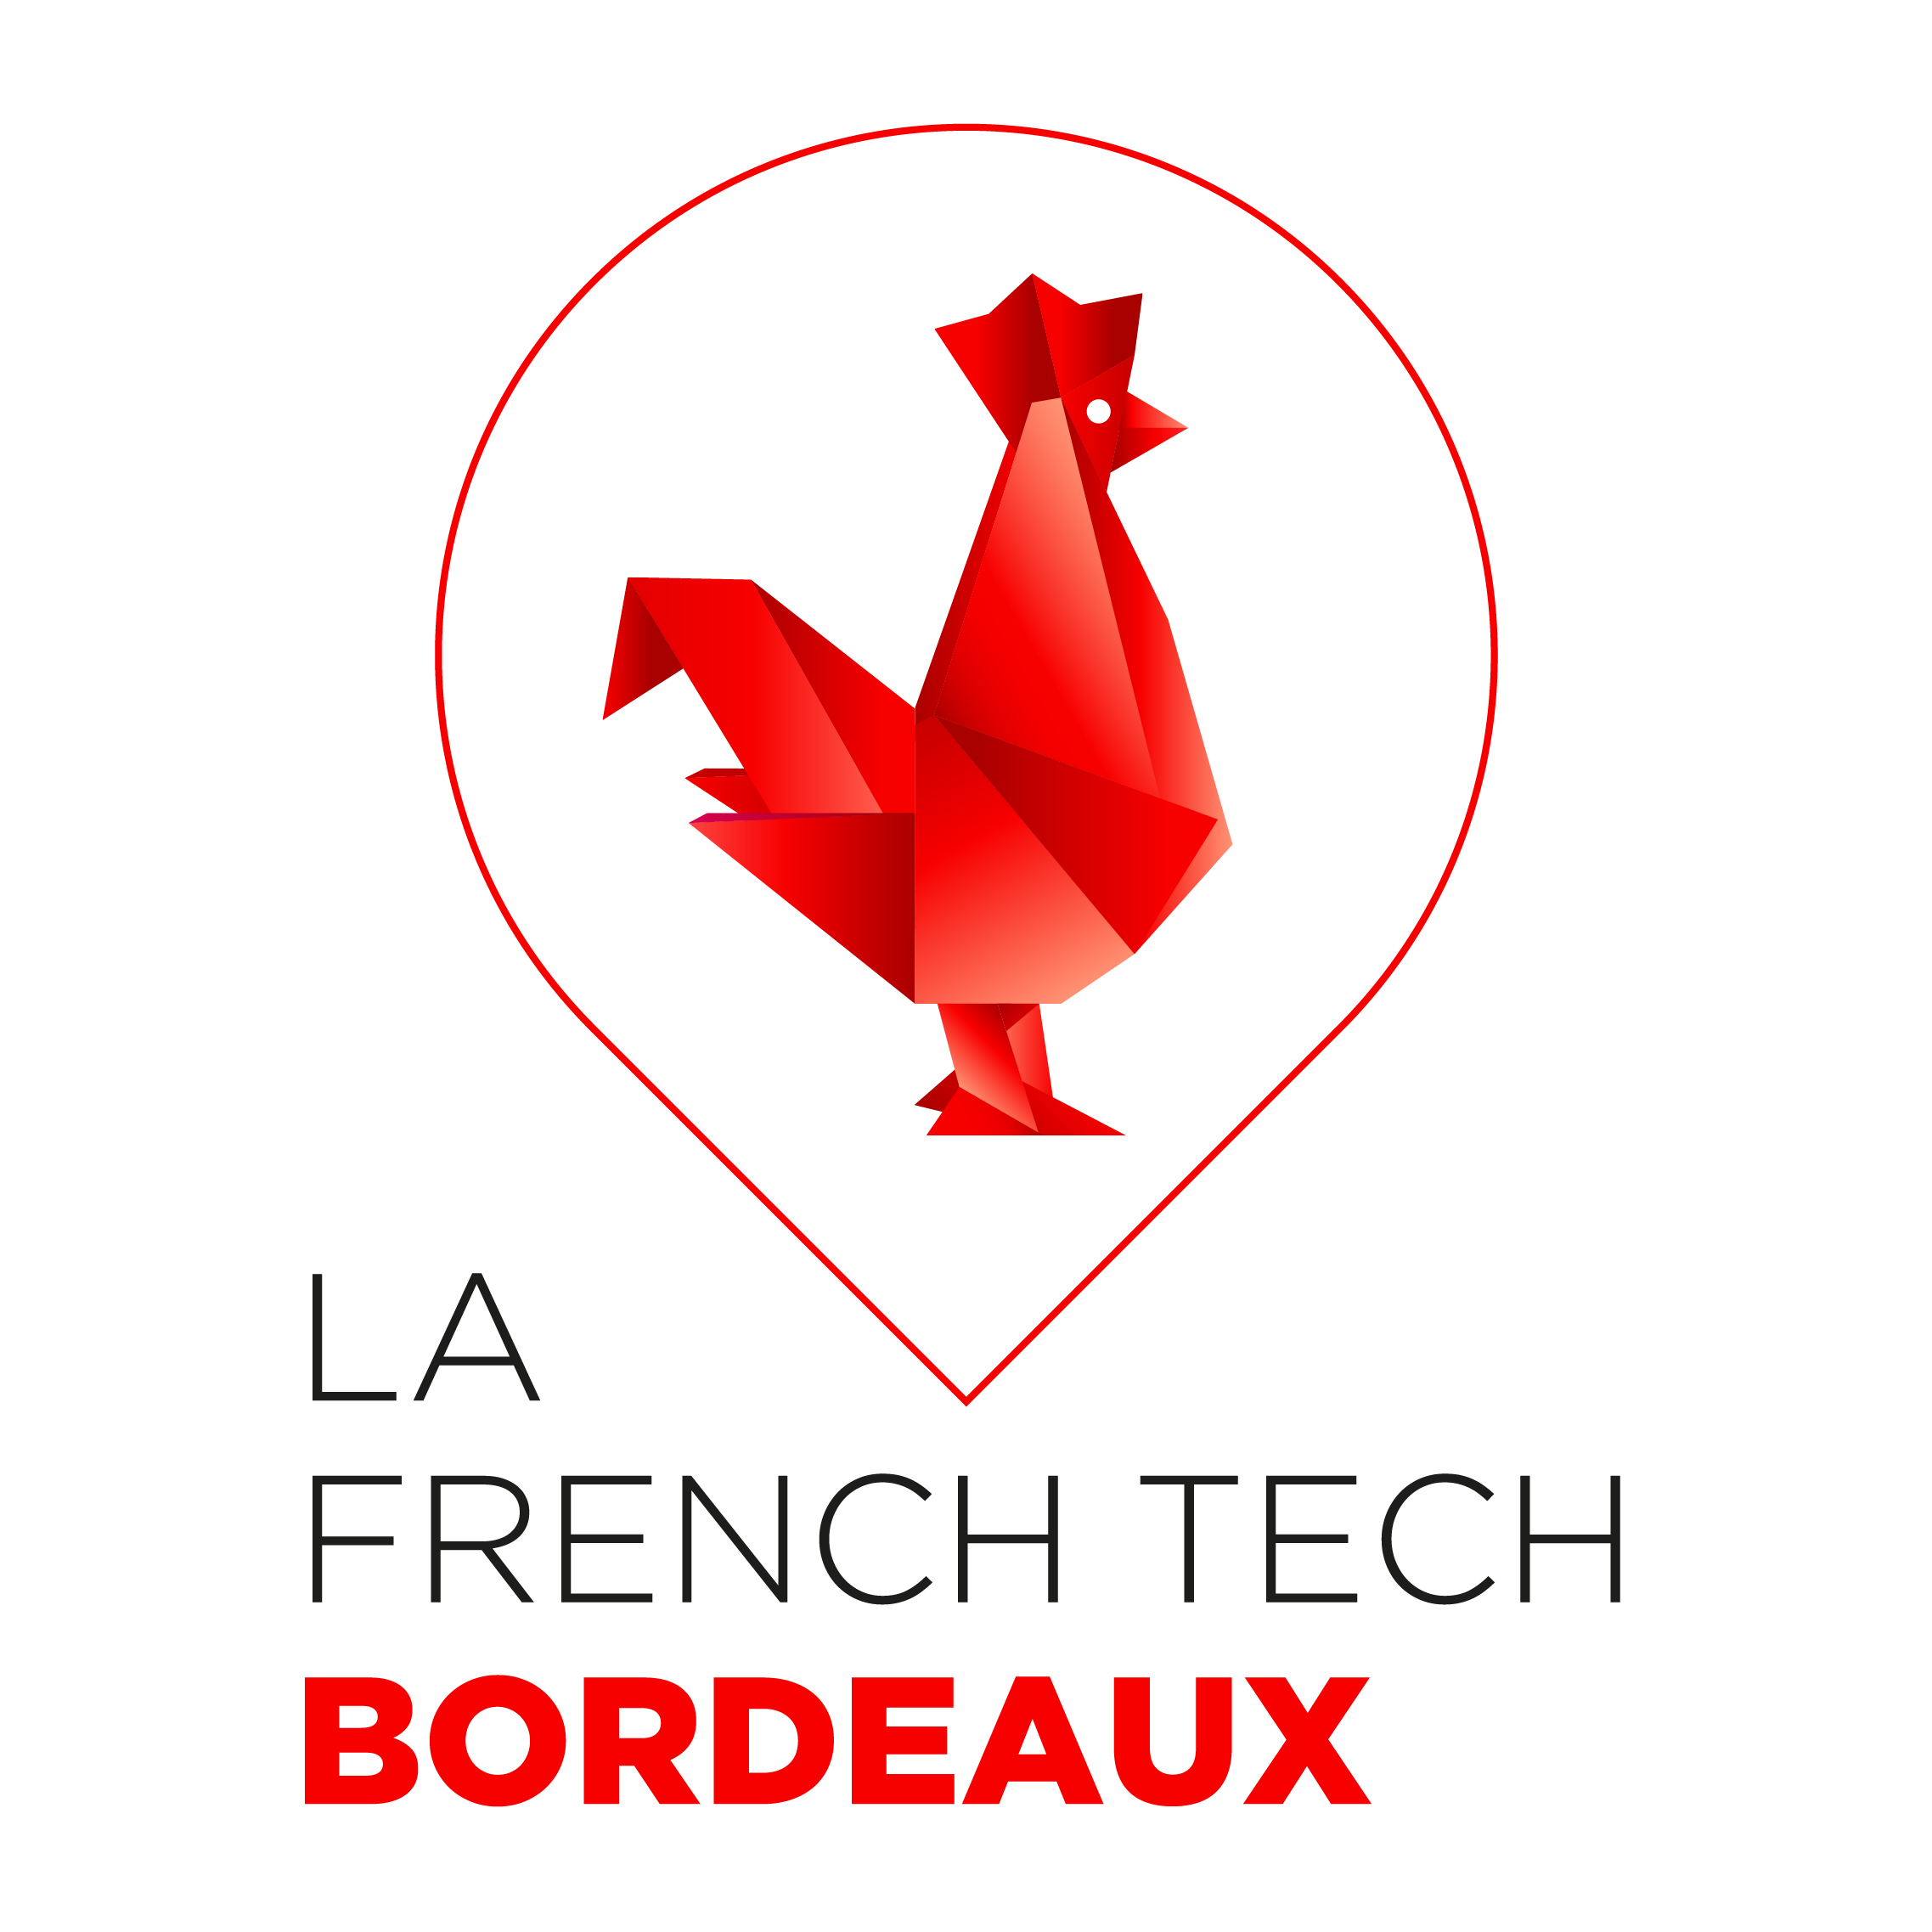 FrenchTech bordeaux logo